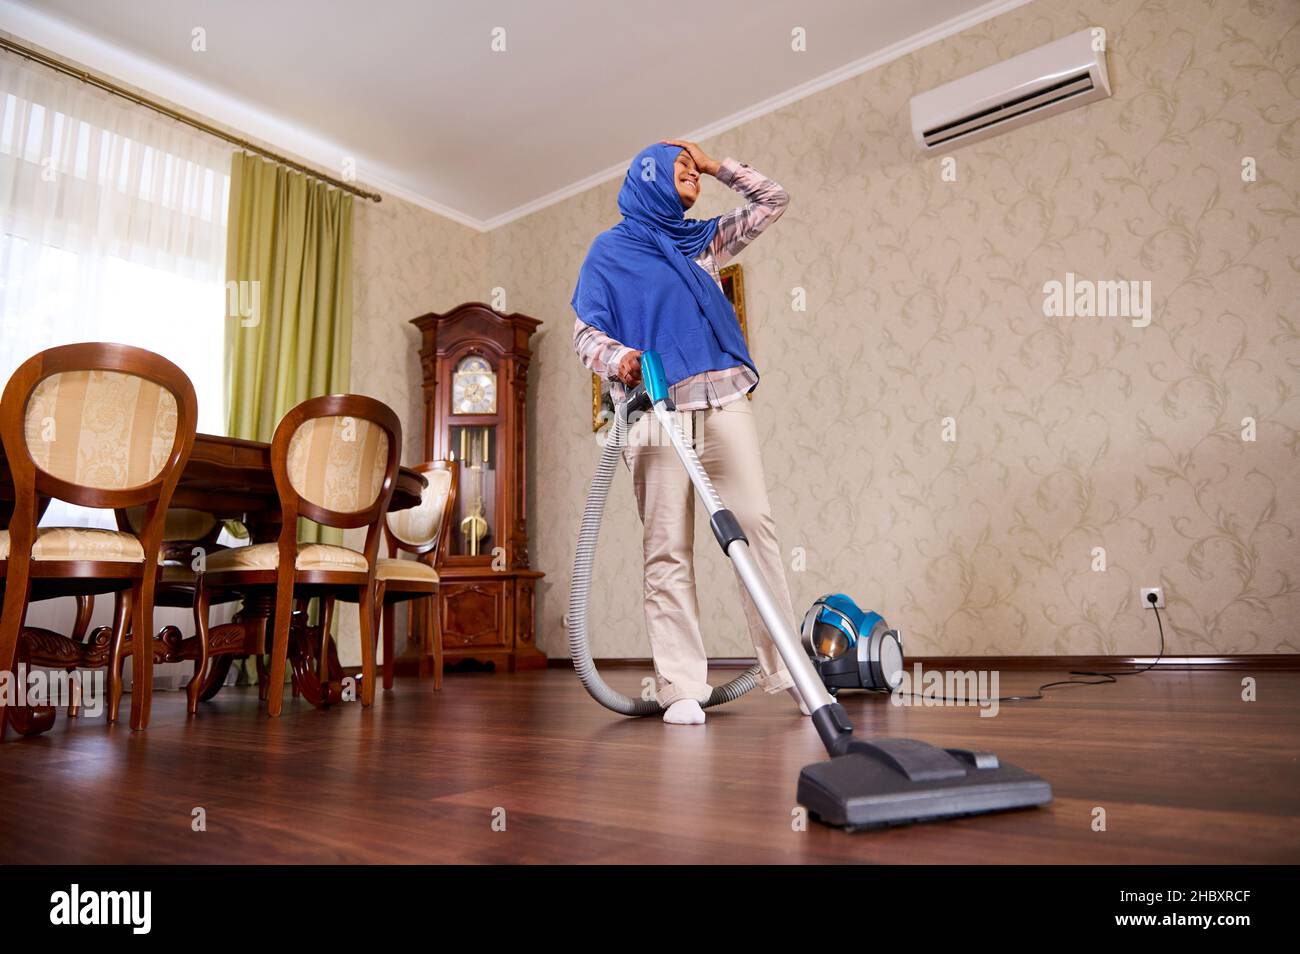 Entzückende, glückliche arabische muslimische junge Frau oder Hausfrau mit  Staubsauger, die zu Hause den Boden saugt, tanzt, singt, genießt das  Aufräumen. Househol Stockfotografie - Alamy